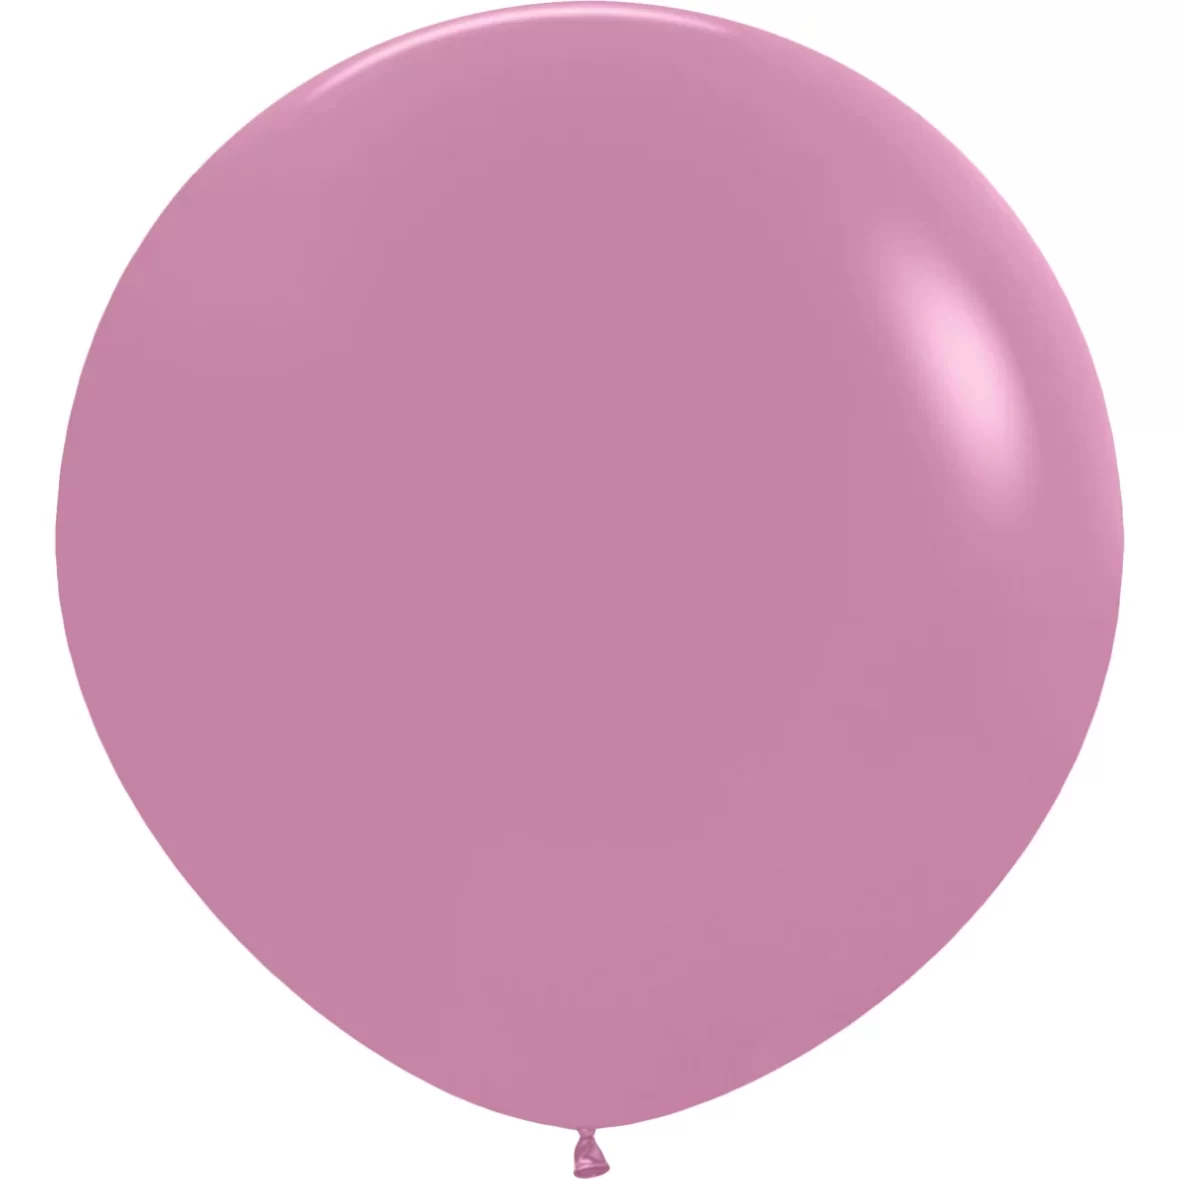 981-baloane-jumbo-ovale-90-cm-2